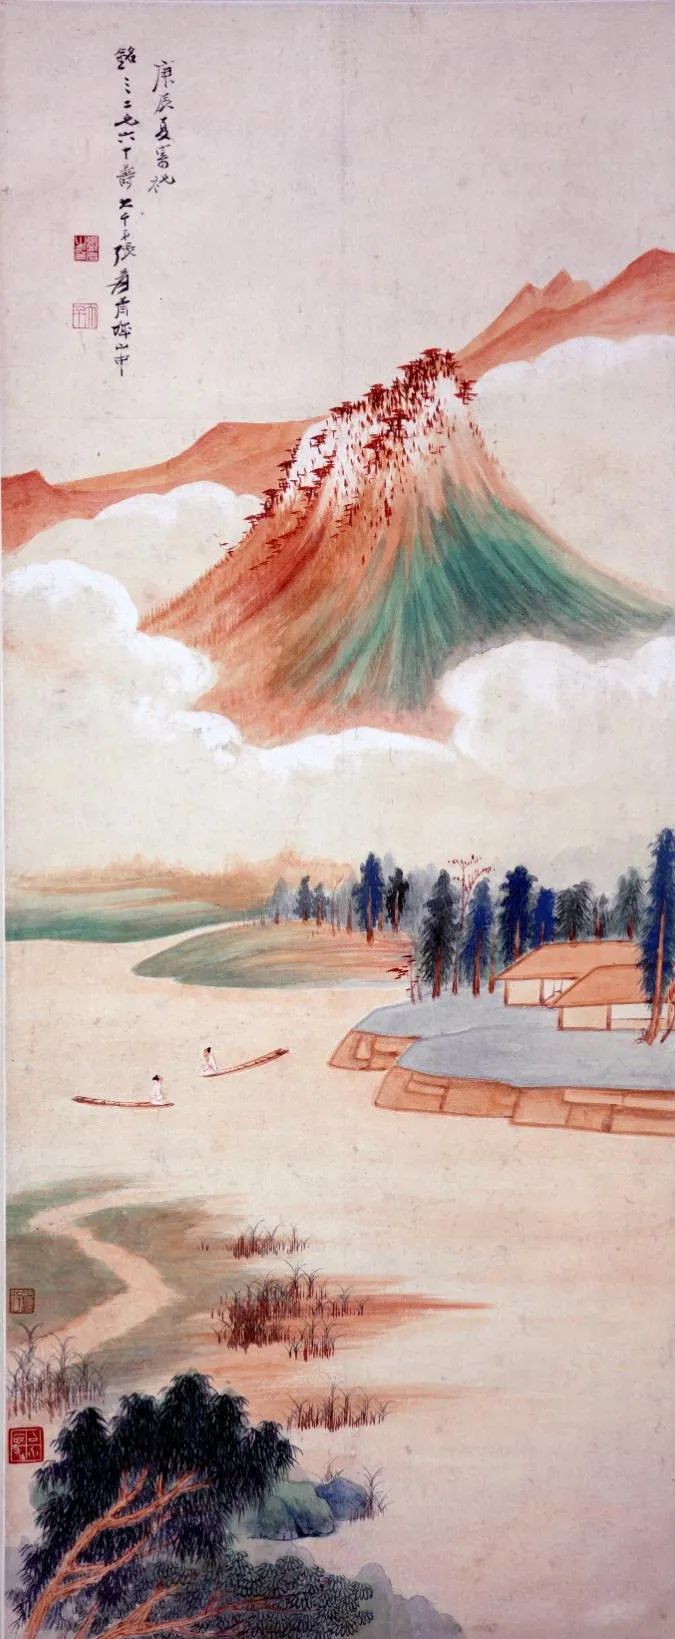 张大千 《白云绕山图》 1940年